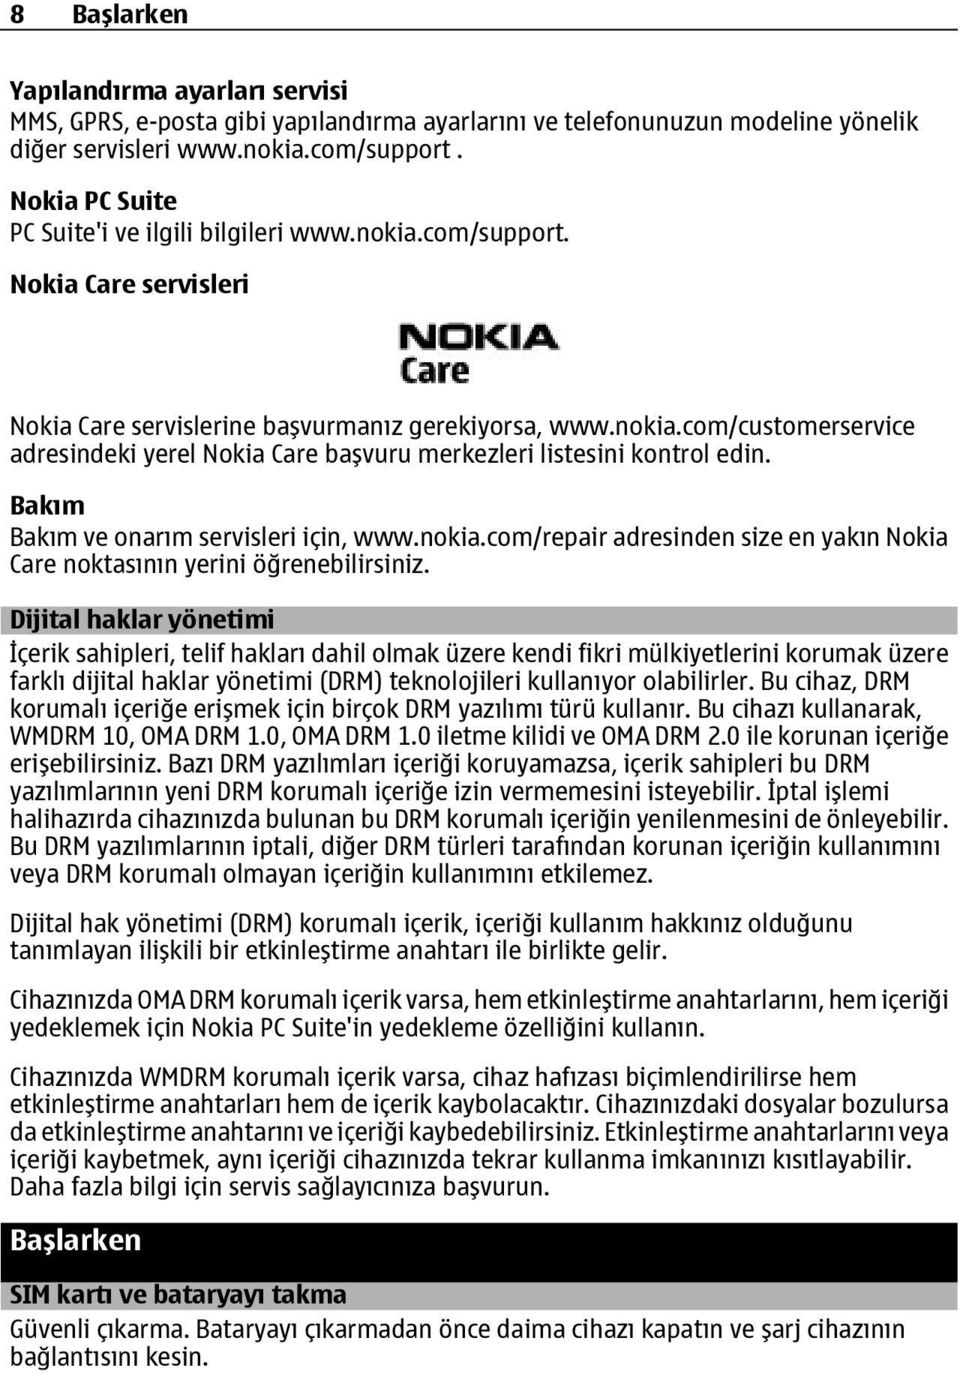 Bakım Bakım ve onarım servisleri için, www.nokia.com/repair adresinden size en yakın Nokia Care noktasının yerini öğrenebilirsiniz.